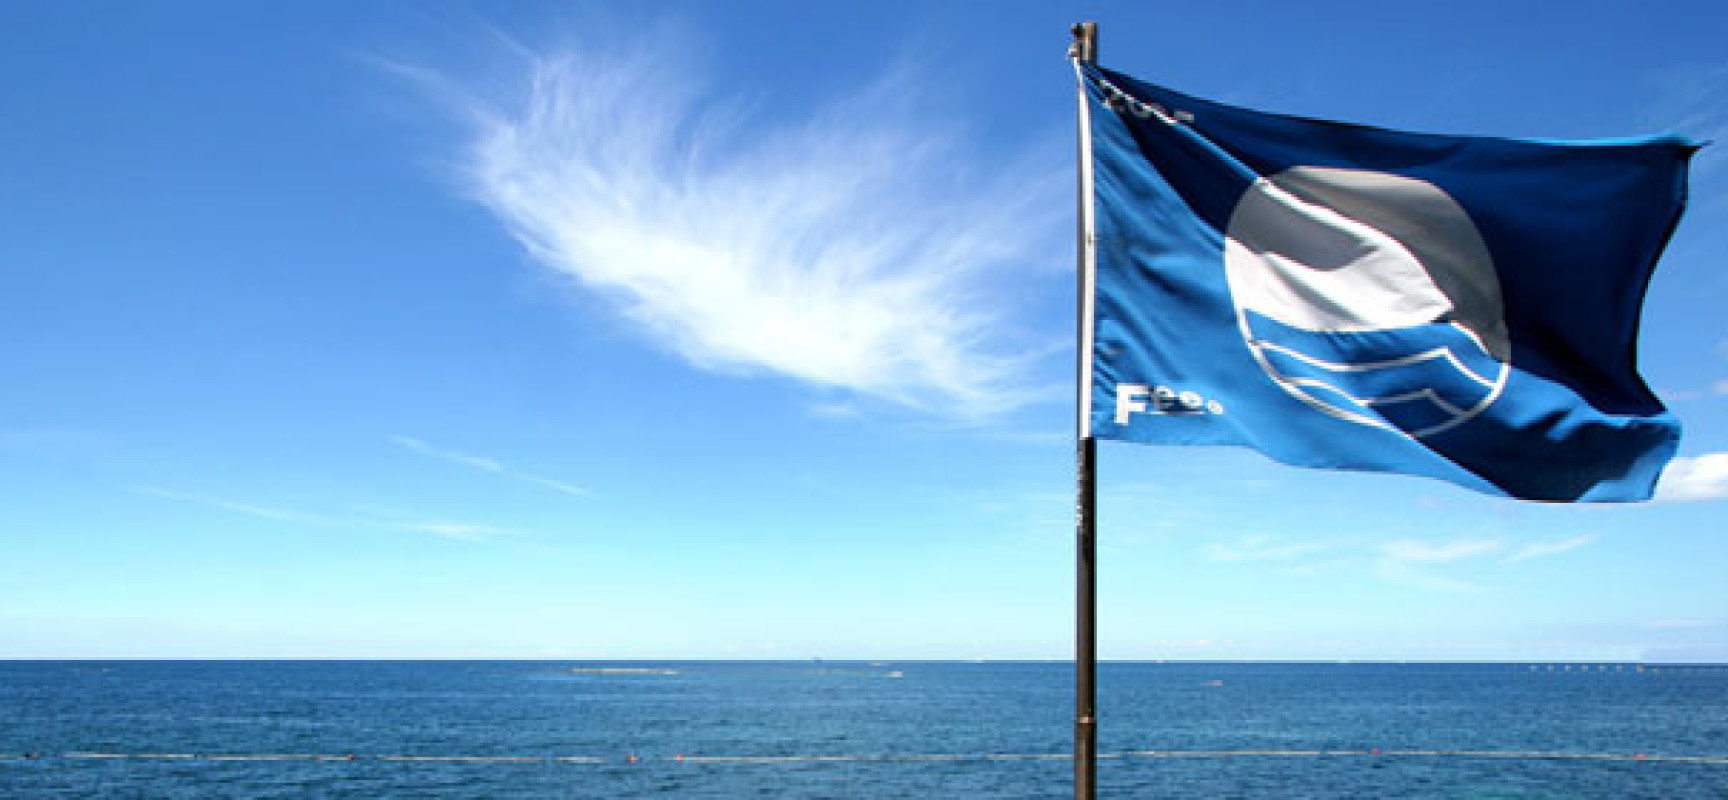 Bandiera Blu, cresce il numero delle acque cristalline italiane